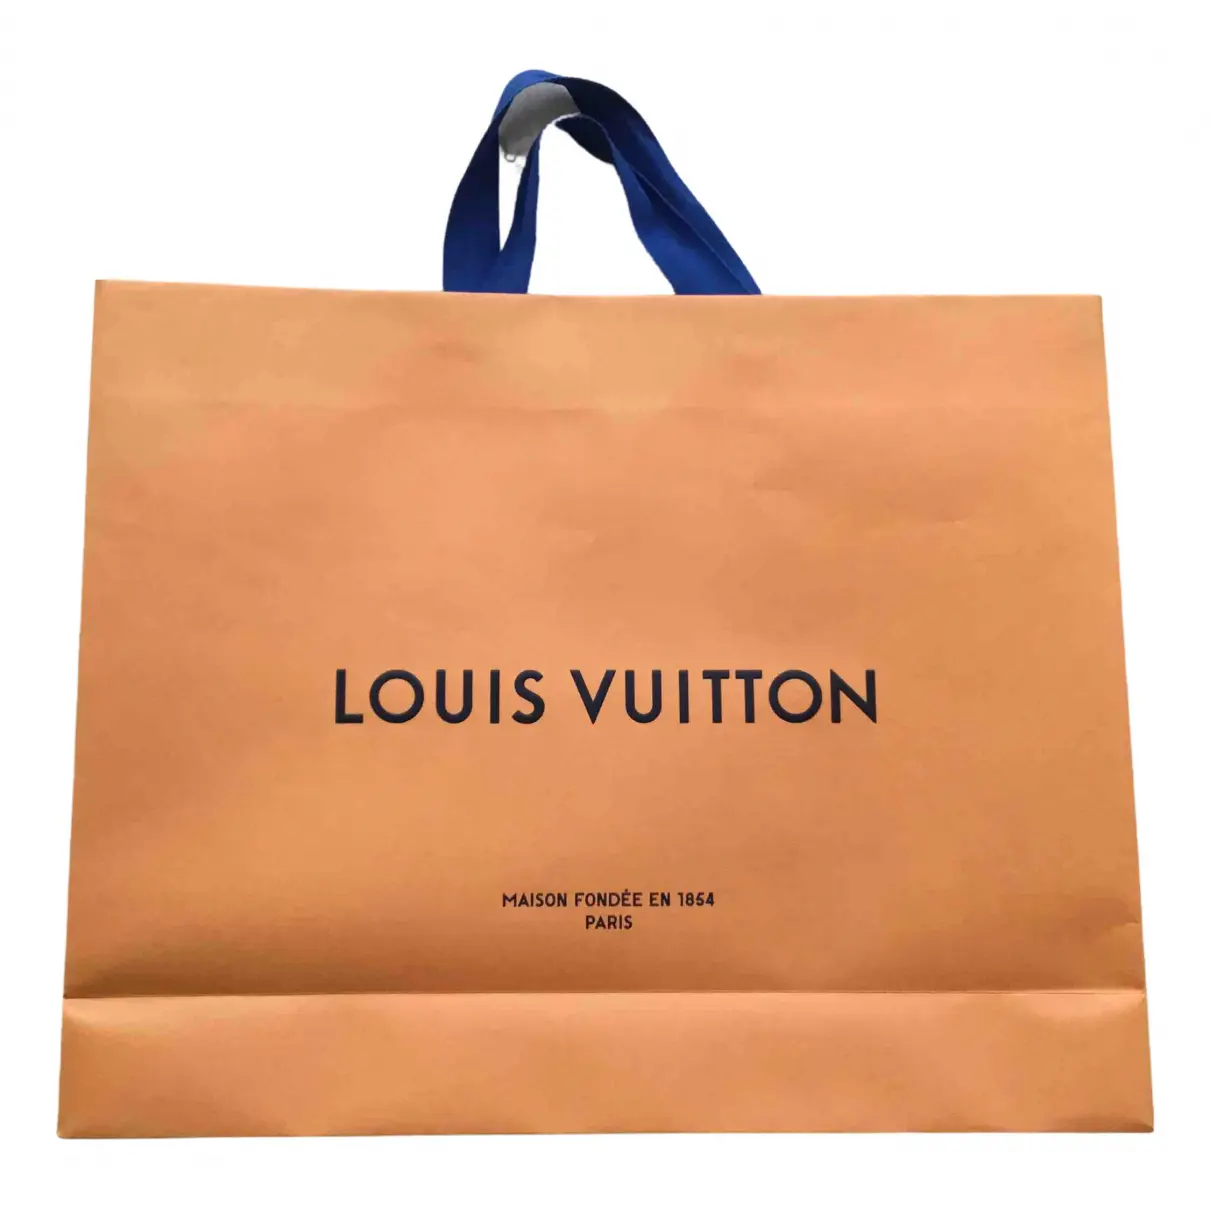 Home decor Louis Vuitton